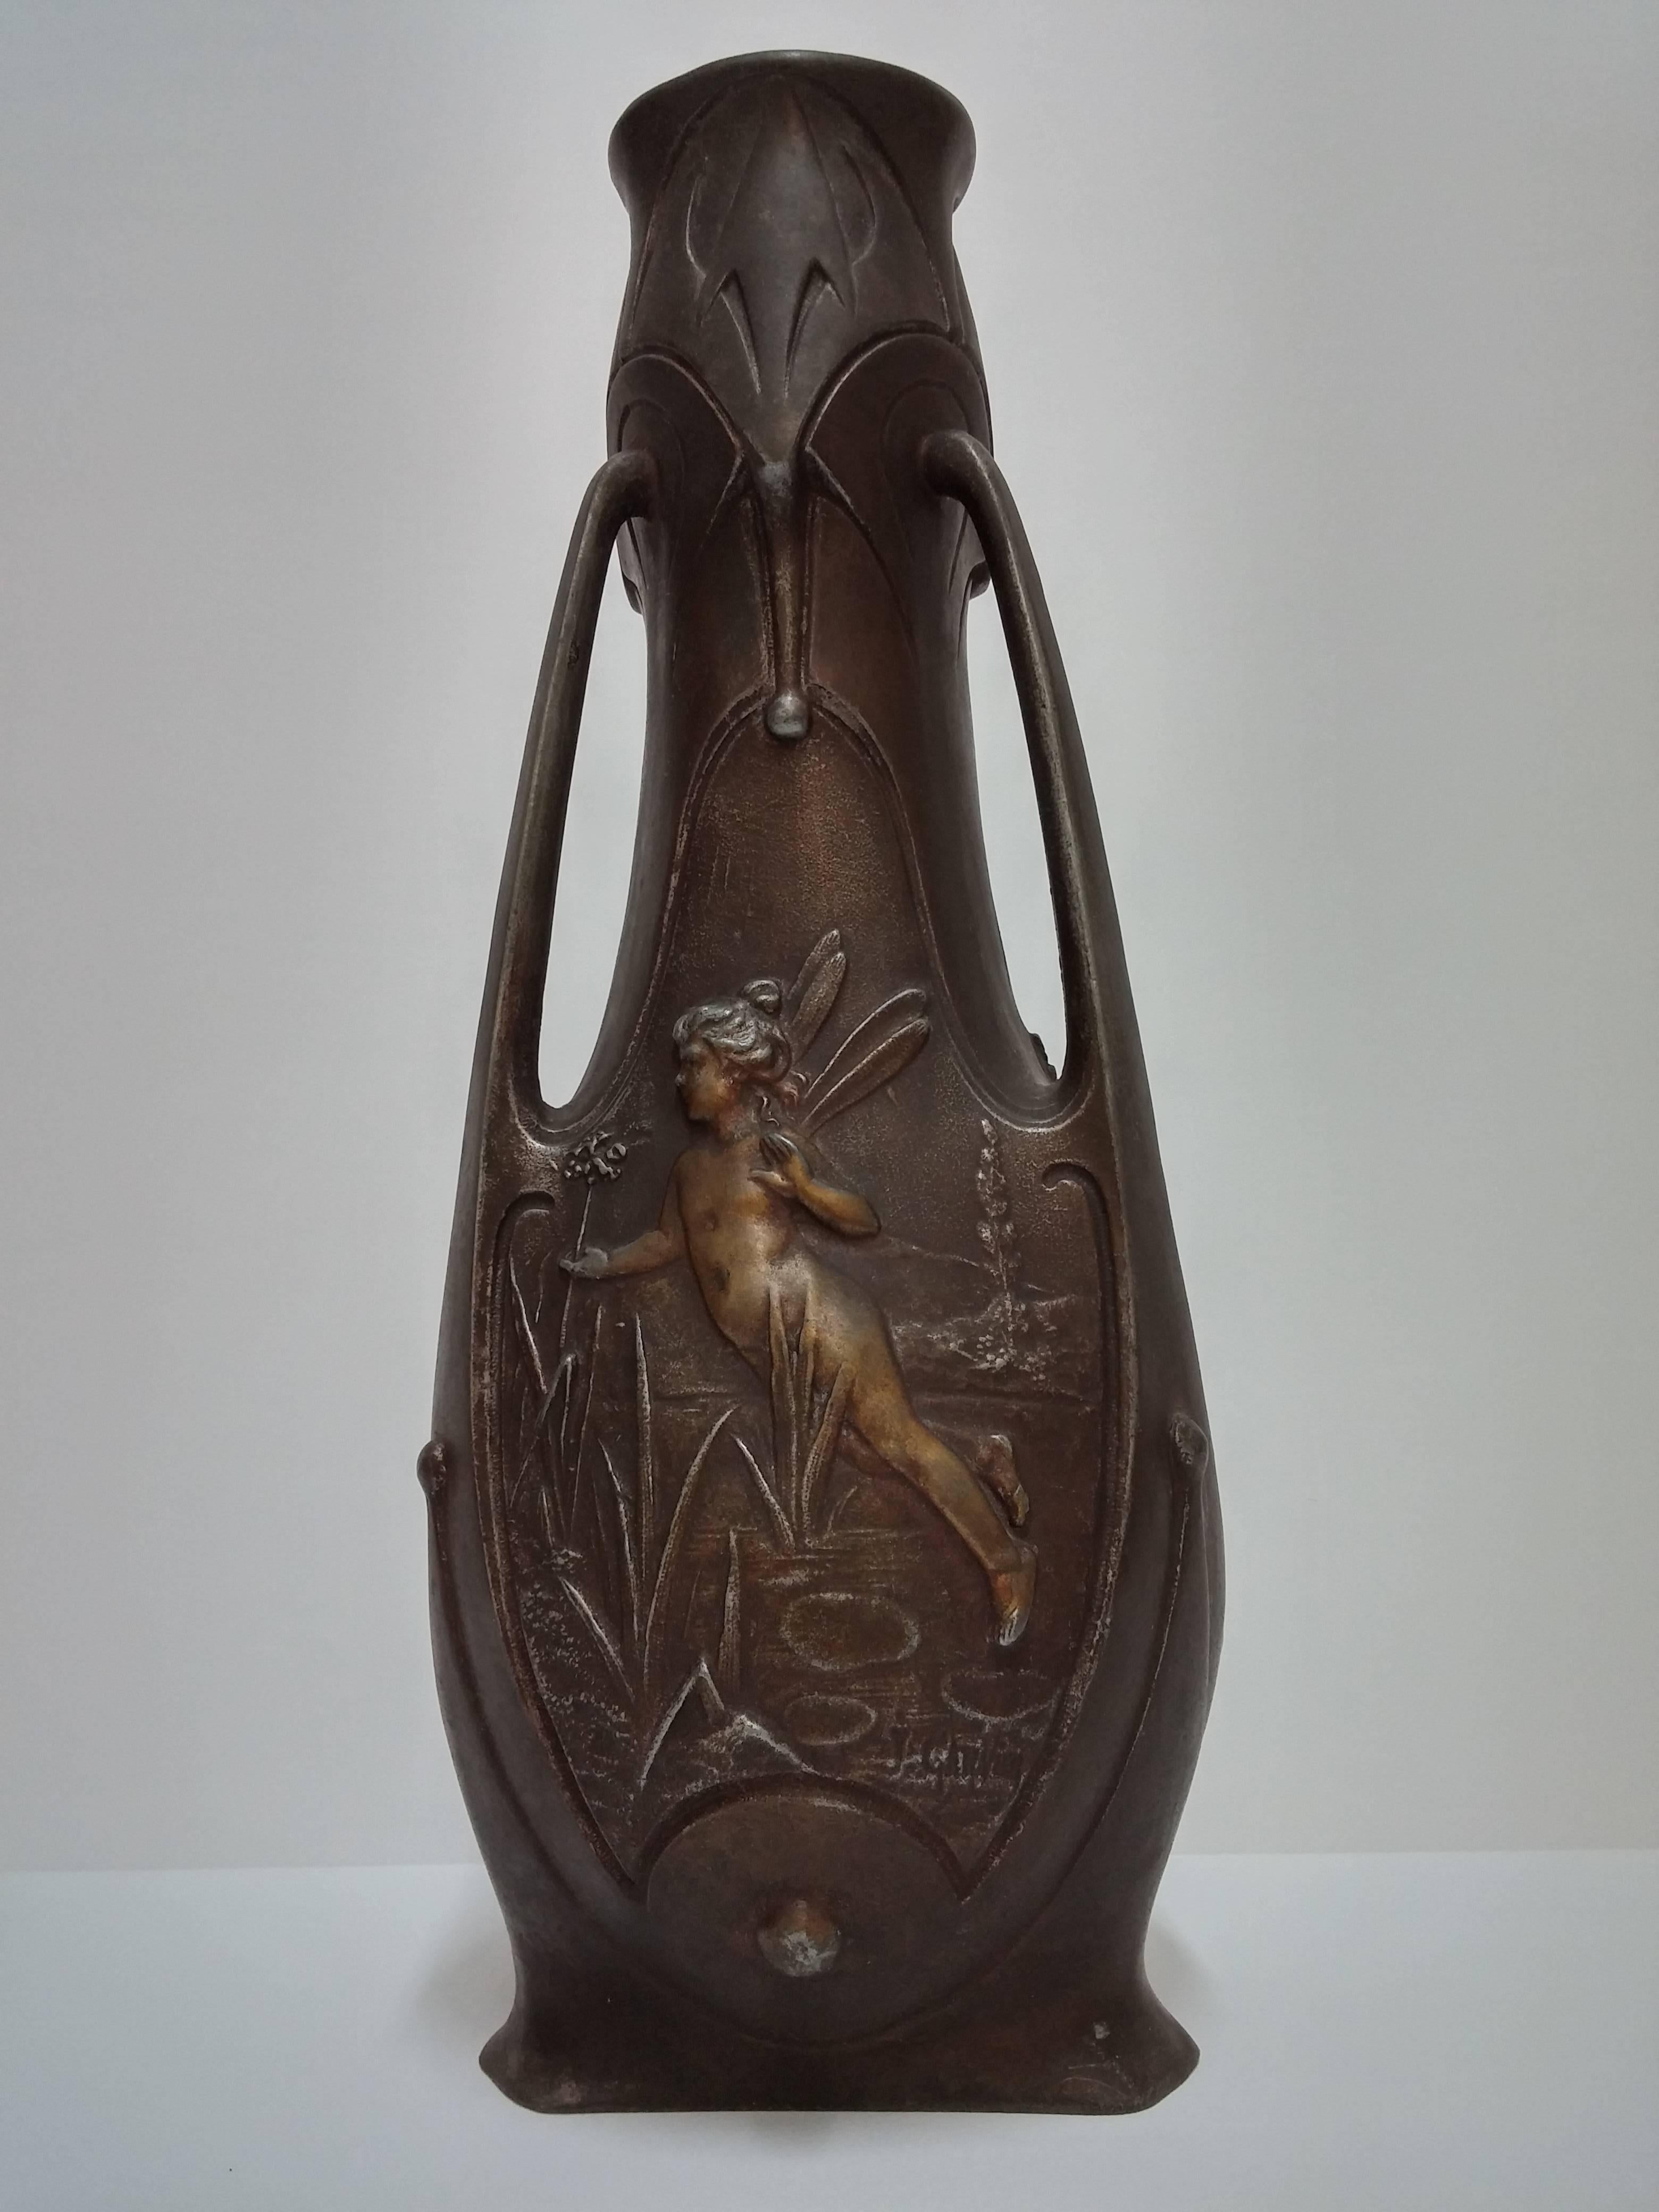 Cast French Art Nouveau Vases For Sale